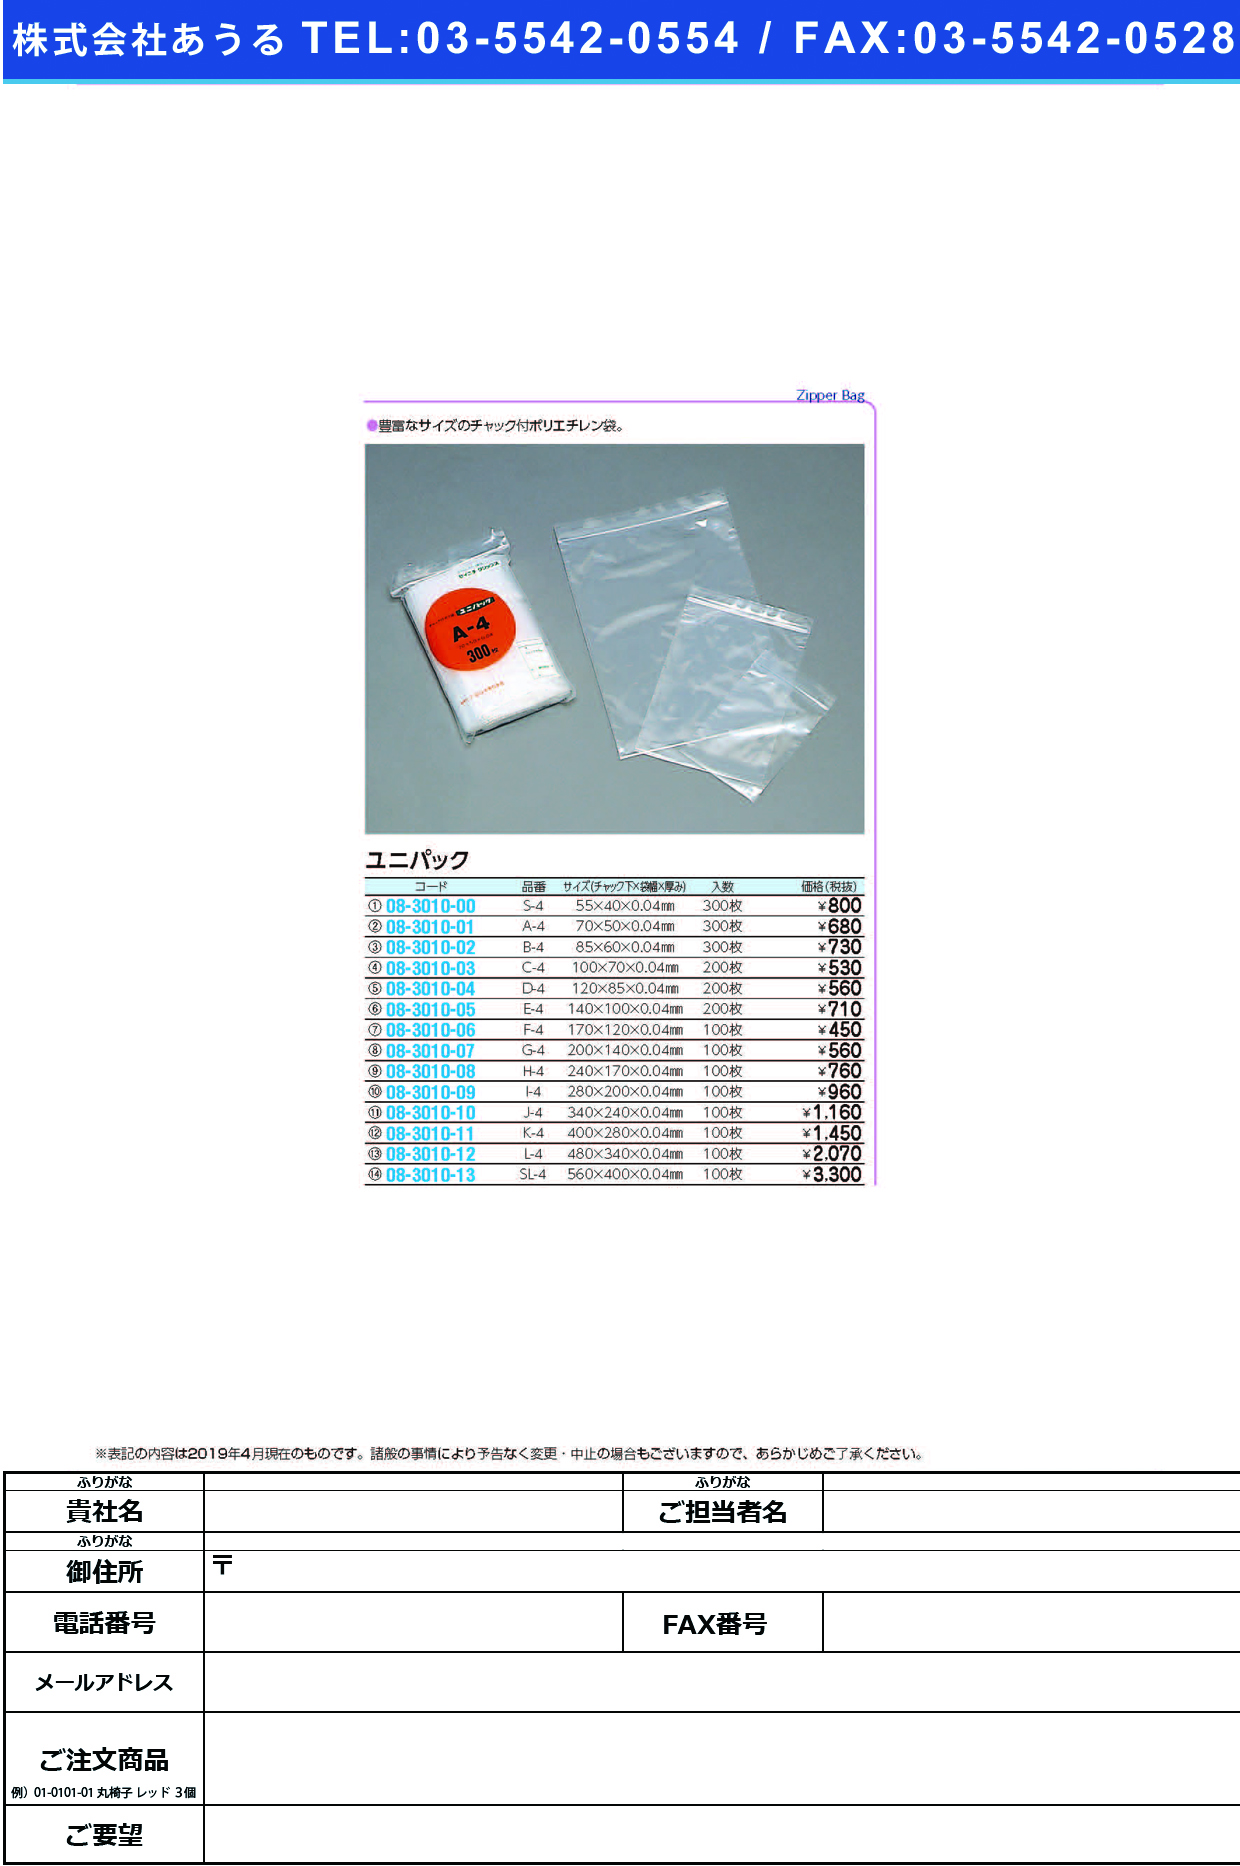 (08-3010-07)ユニパック G-4(200X140MM)100ﾏｲ ﾕﾆﾊﾟｯｸ【1袋単位】【2019年カタログ商品】